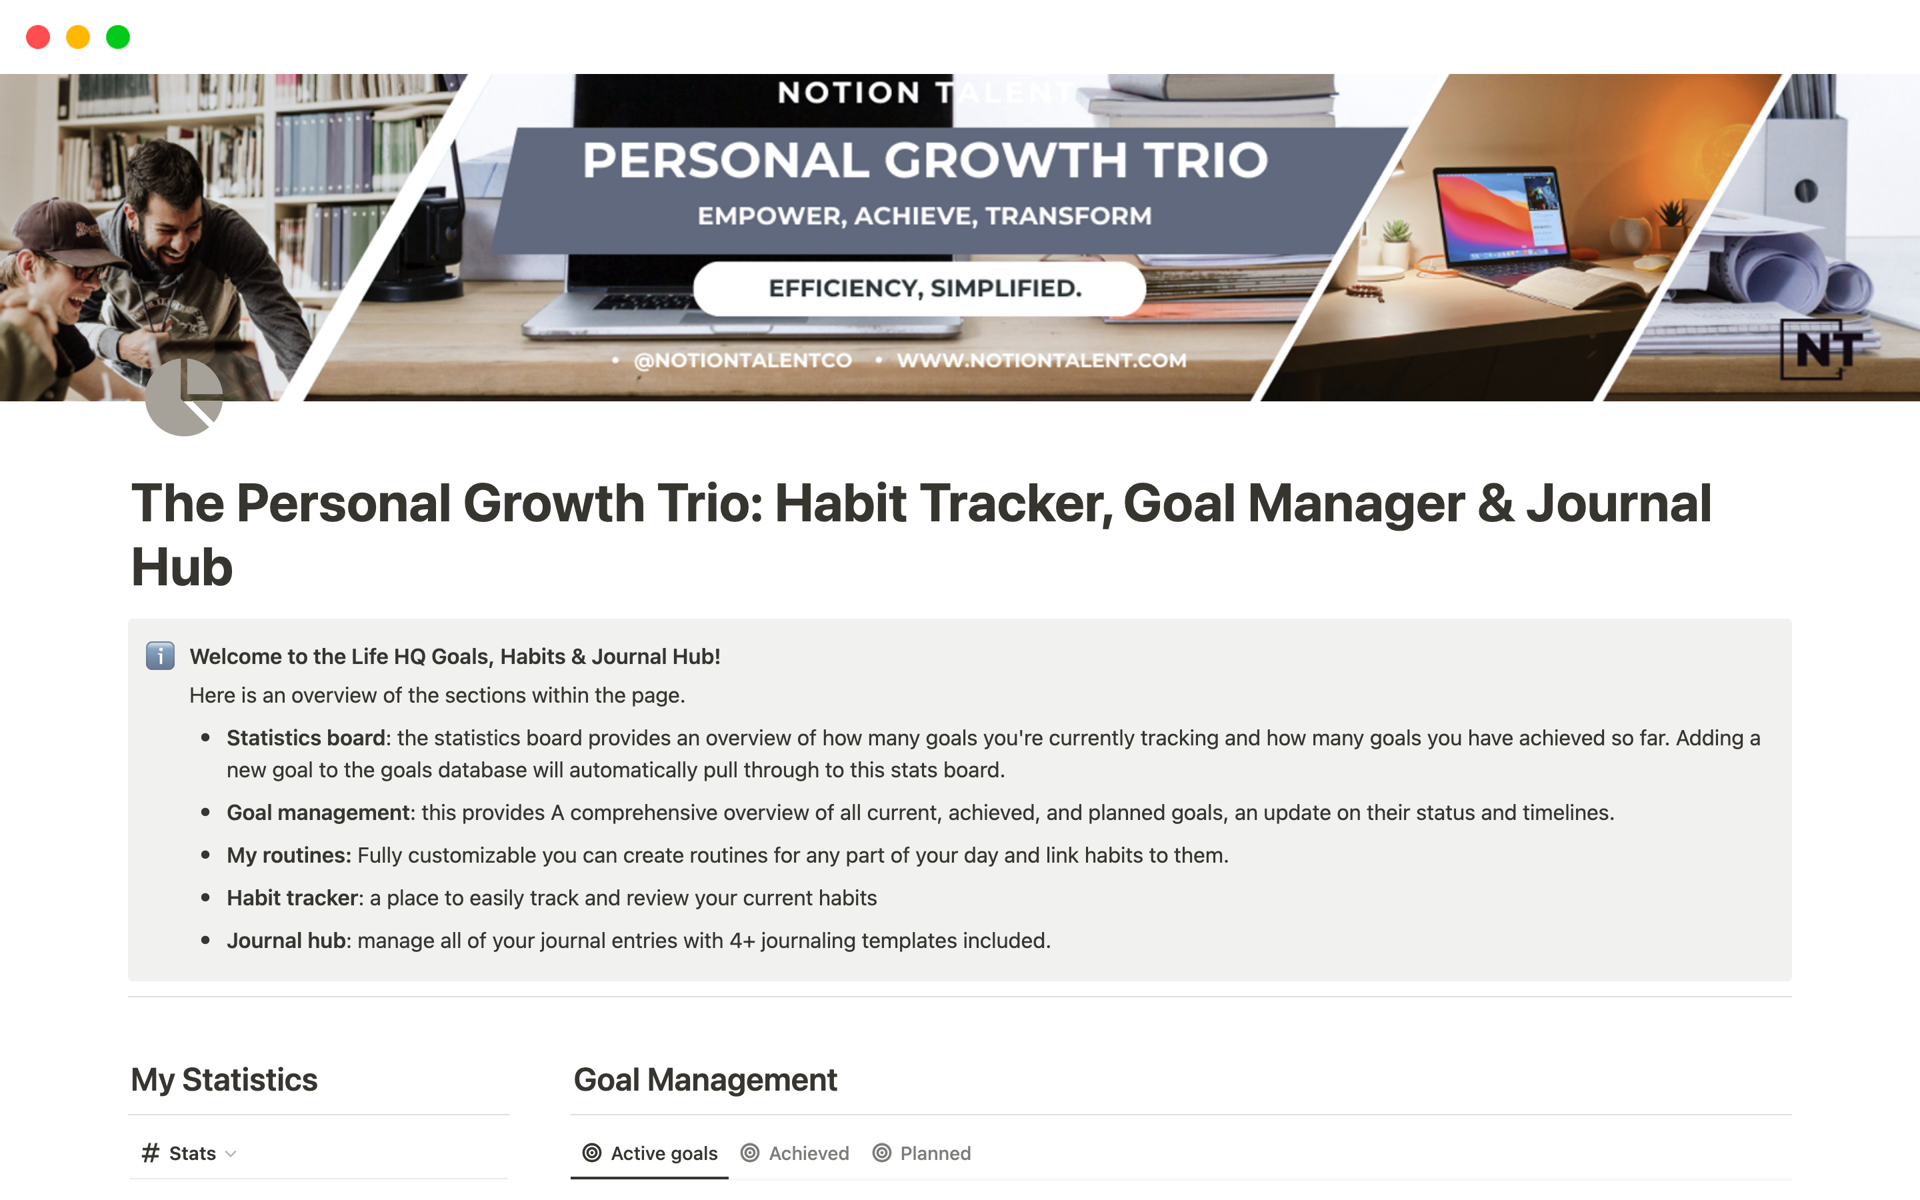 Aperçu du modèle de The Personal Growth Trio: Habits, Goals & Journal